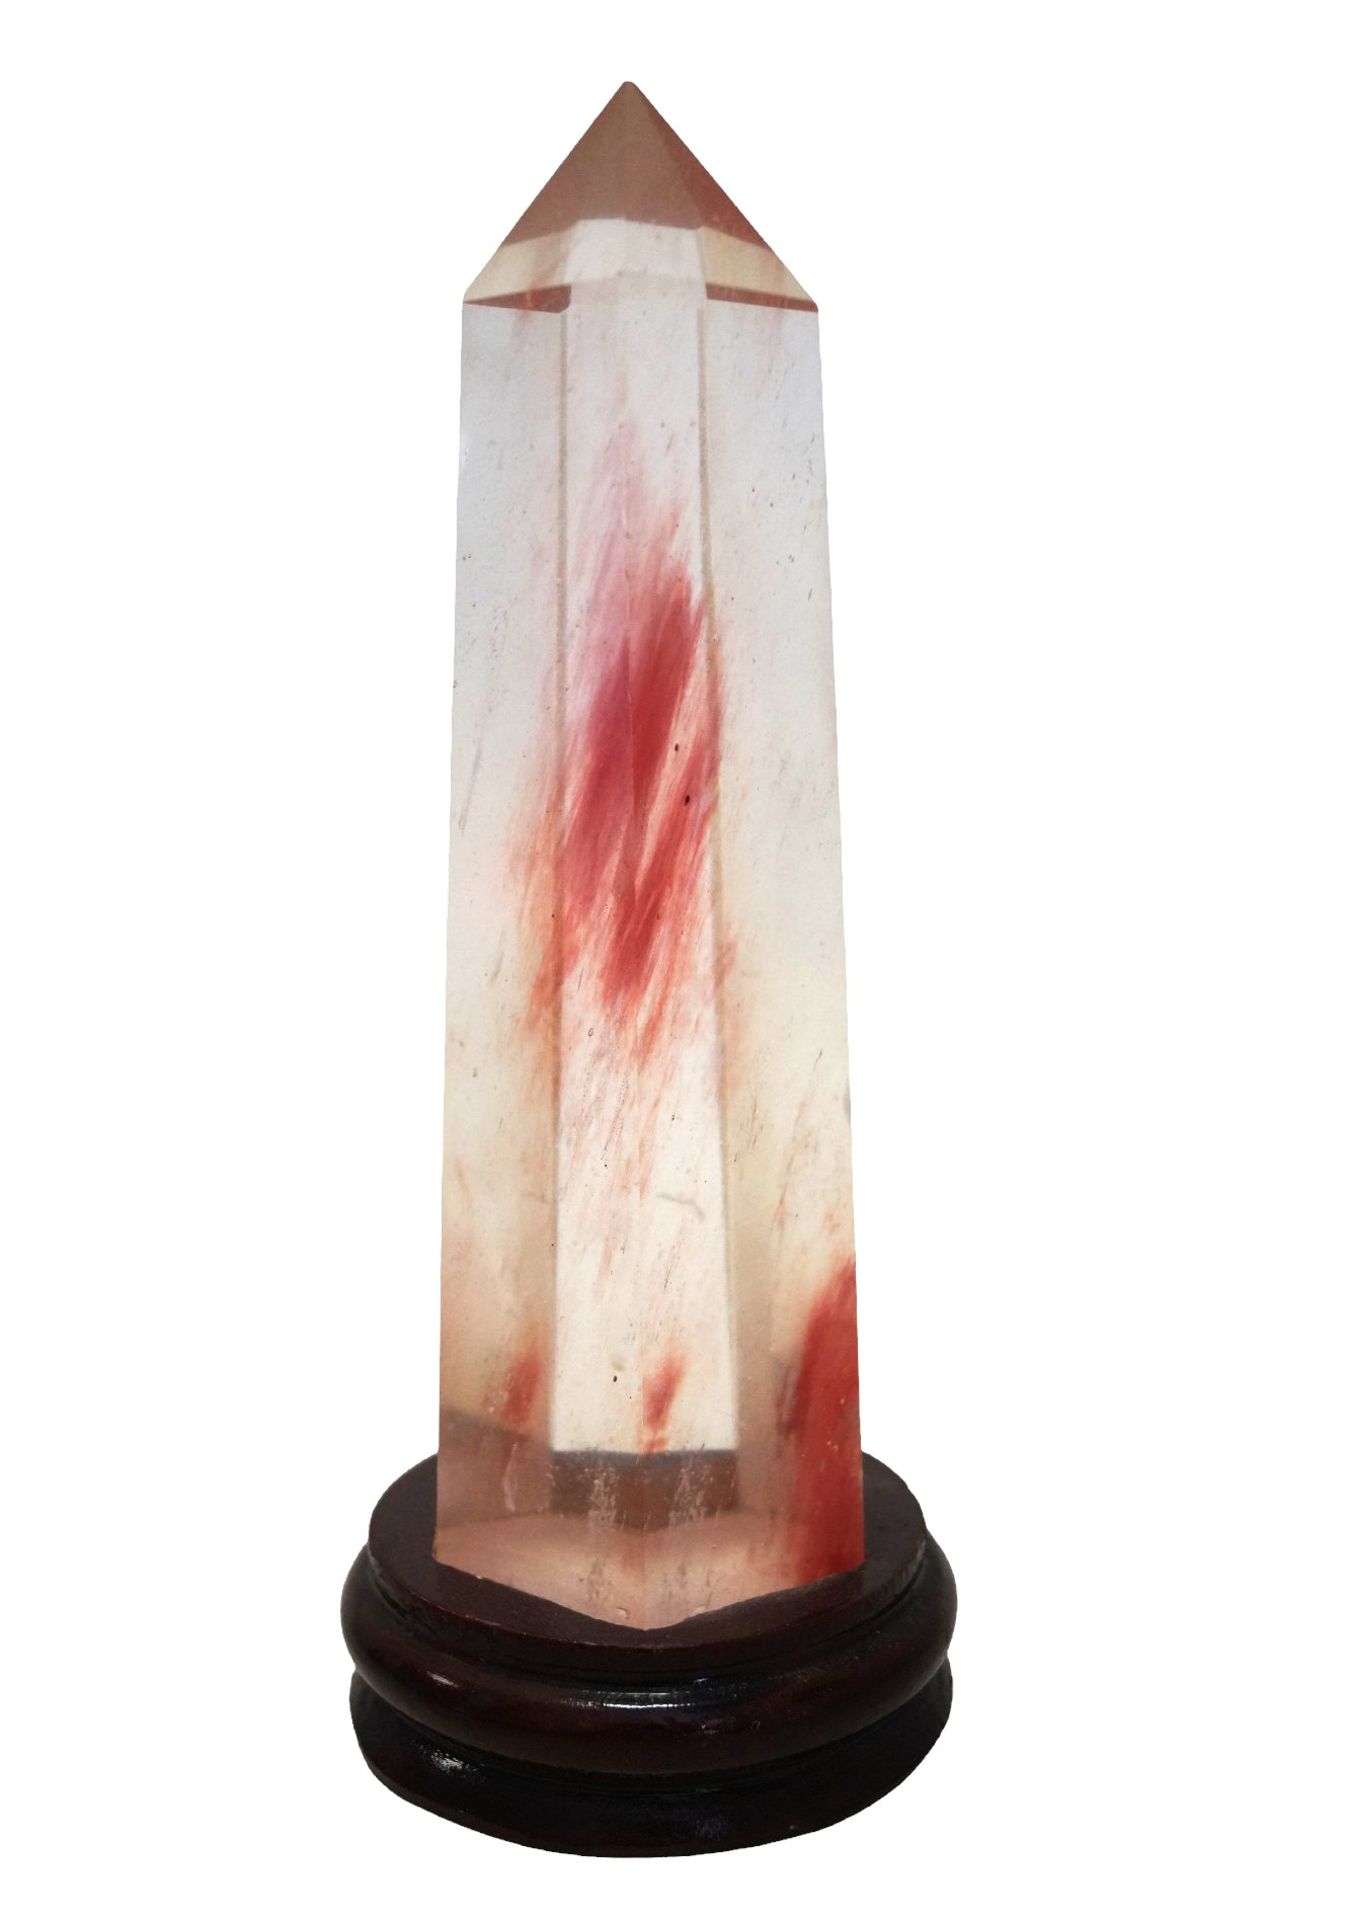 6-kantige, als Kristall geschliffene Glassäule mit leichten roten Schlieren als Einschluss; auf Hol